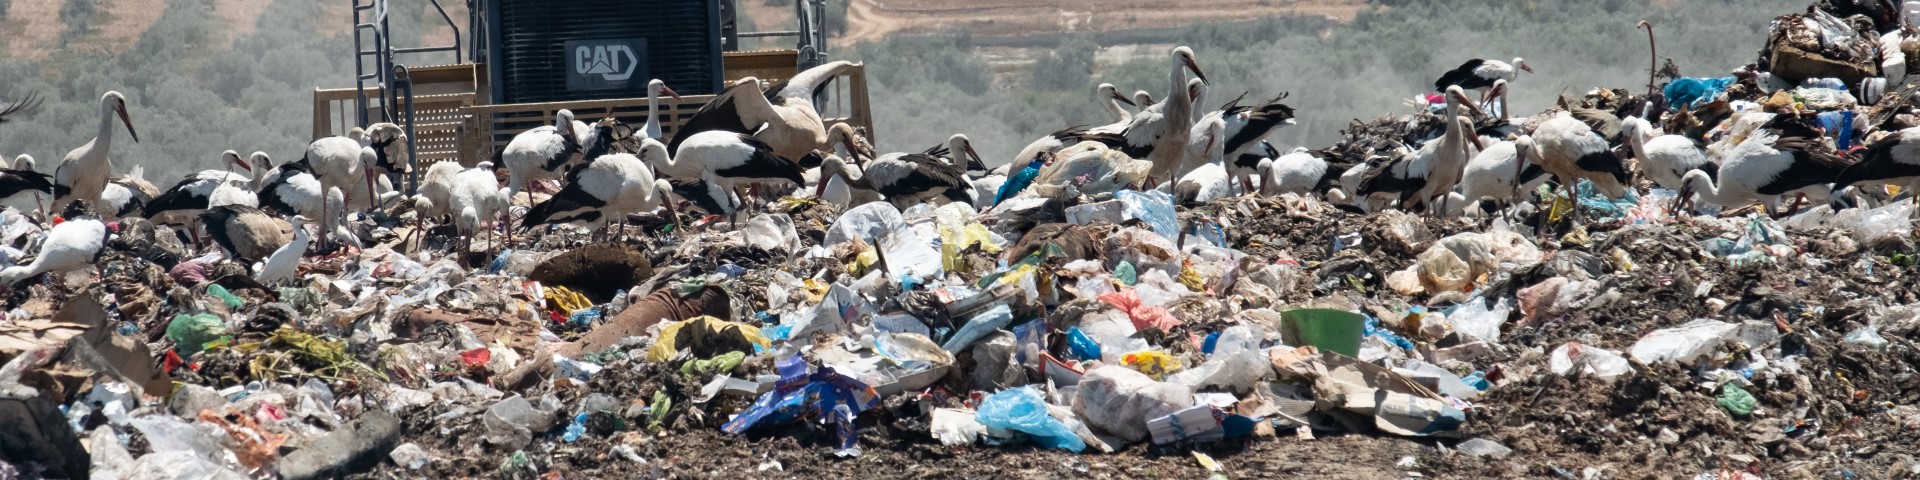 Vögel suchen auf einer Mülldeponie nach Essensresten. Im Hintergrund steht ein Bagger.